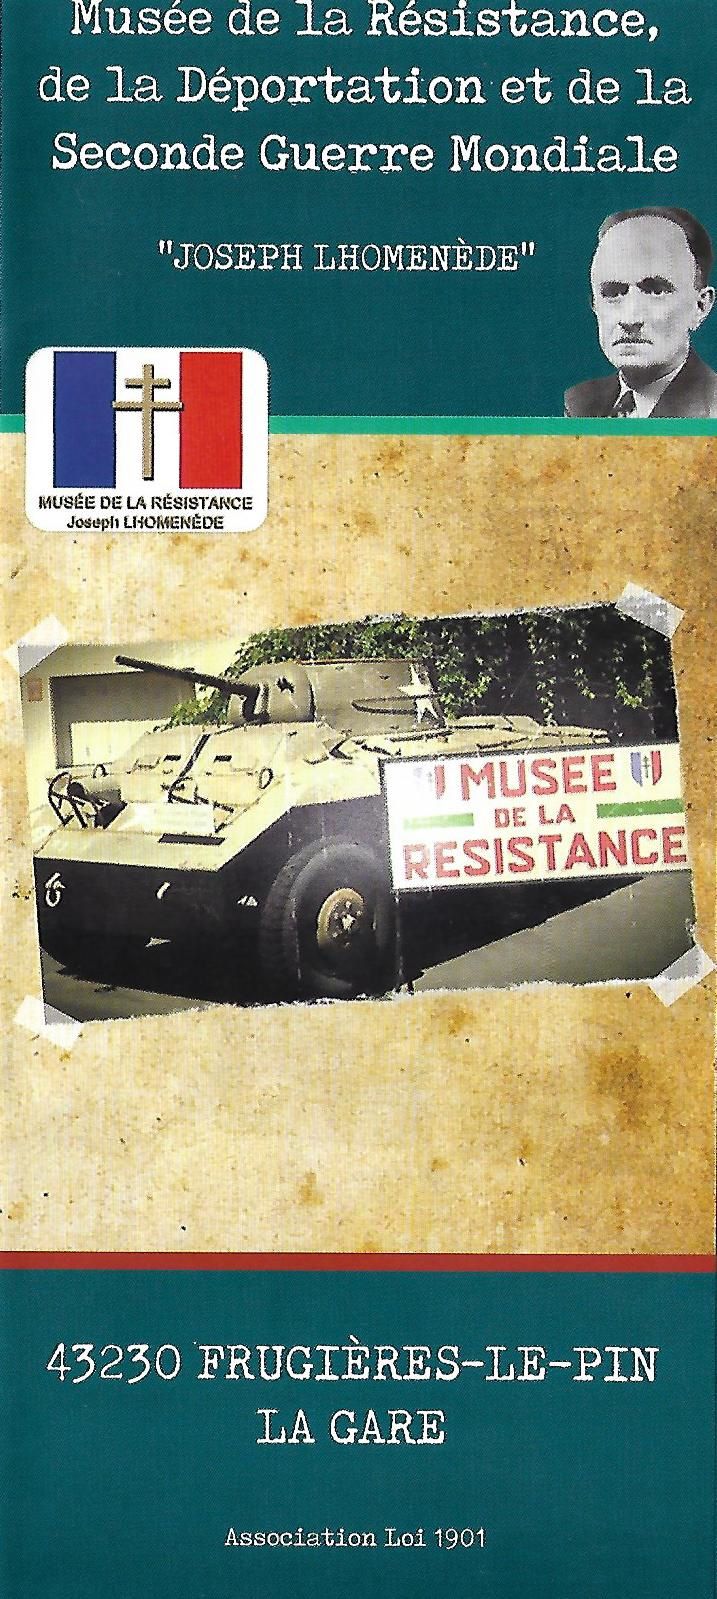 Musée de la résistance à Frugières Le Pin